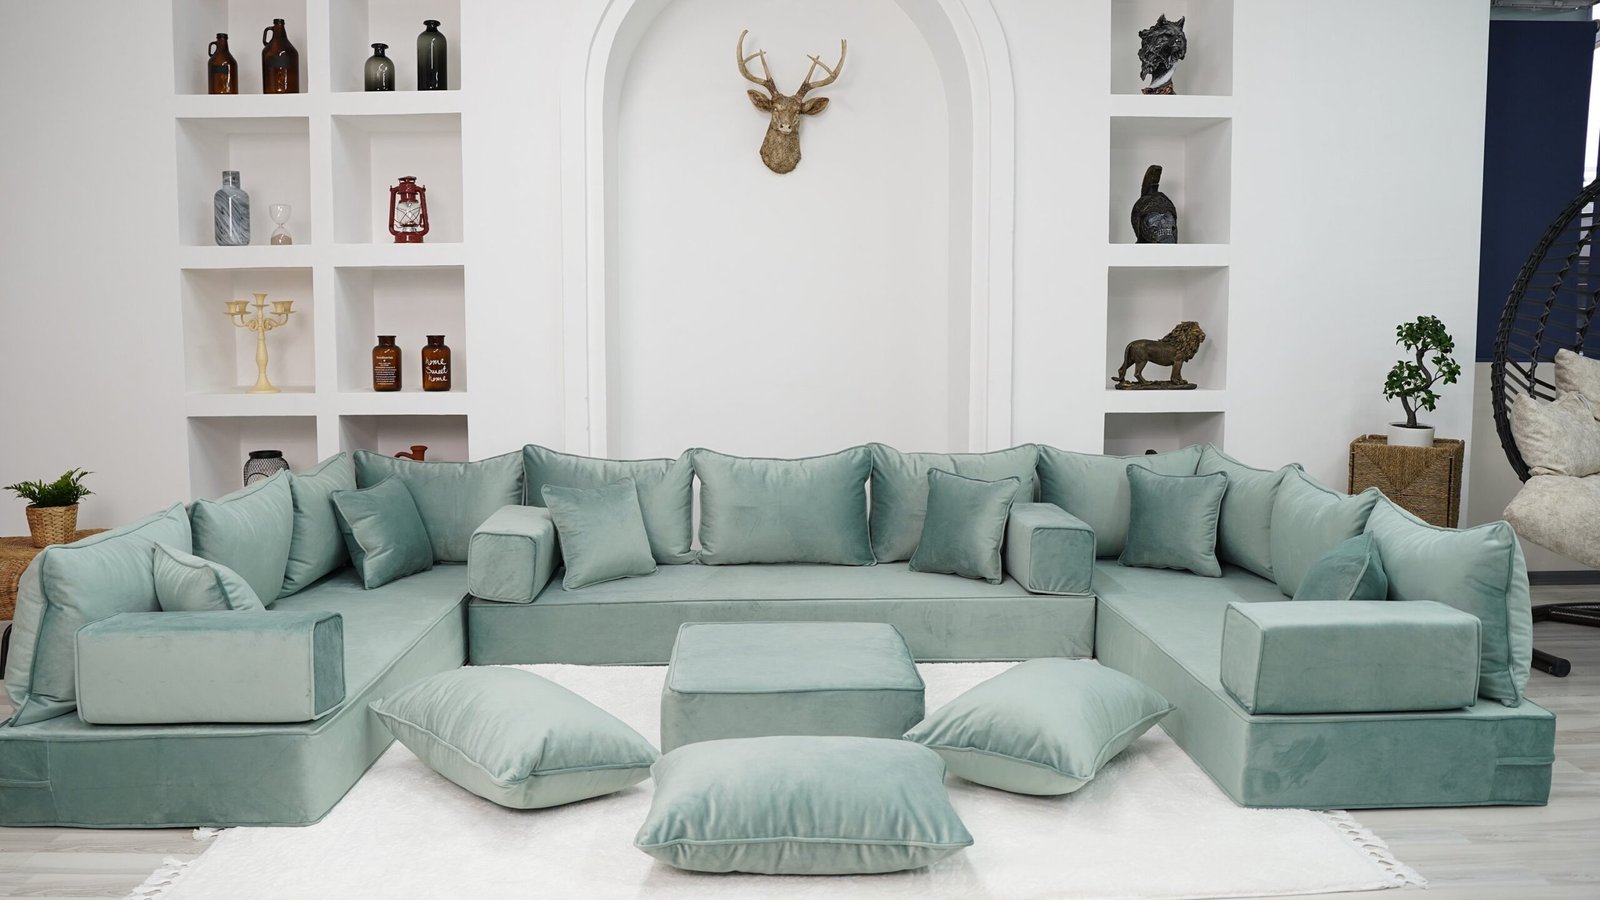 sofa protegido por garantia platinum protection plan scaled